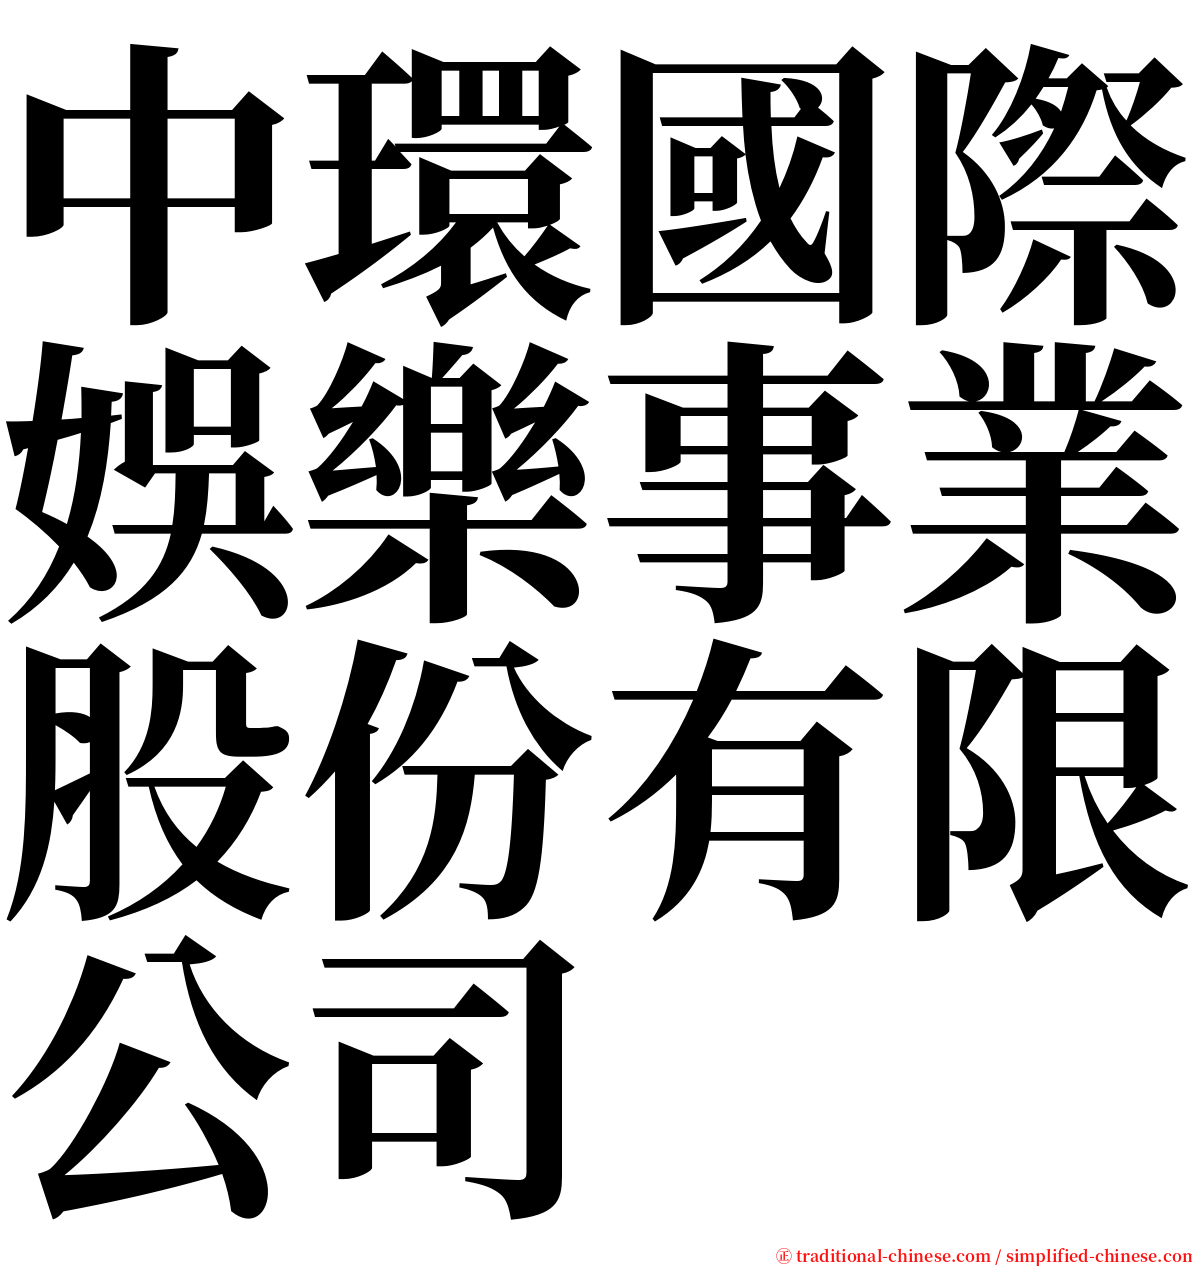 中環國際娛樂事業股份有限公司 serif font